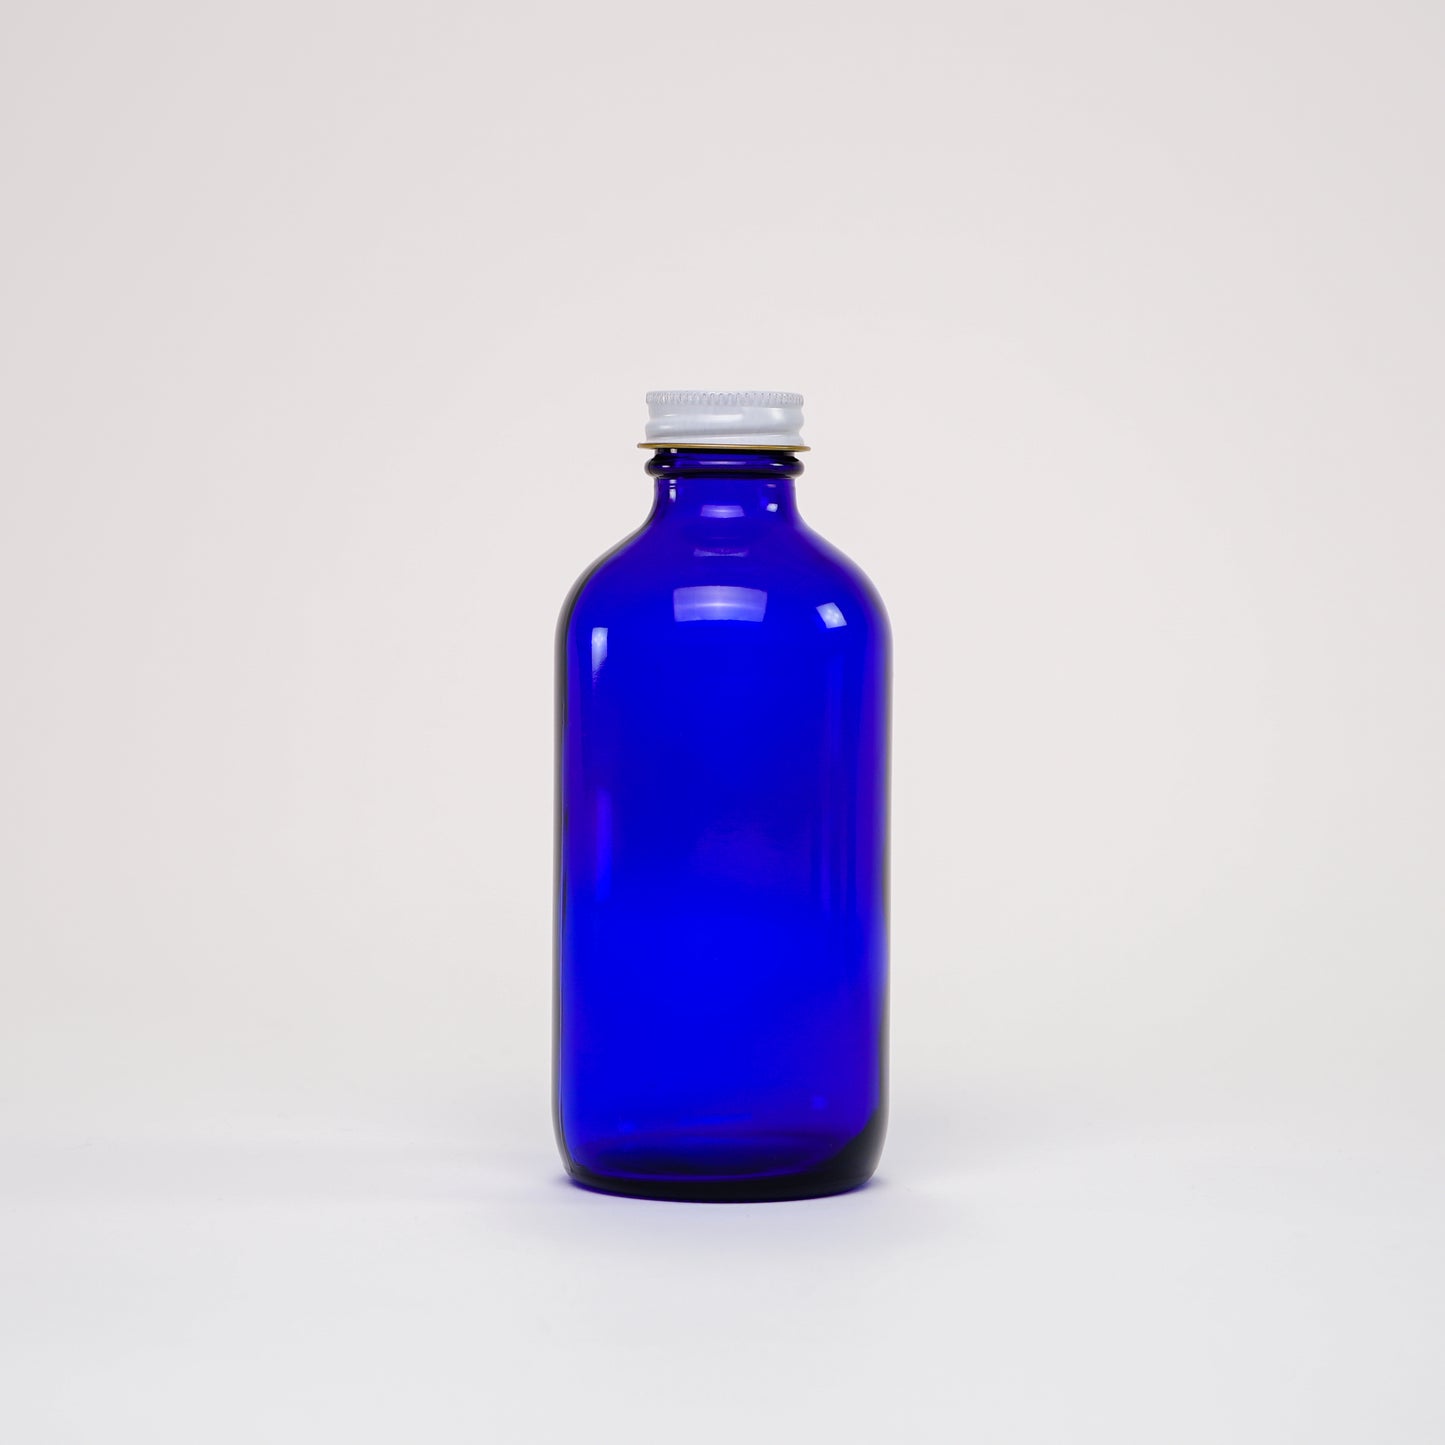 8 oz Cobalt Blue Glass Keeper Bottle